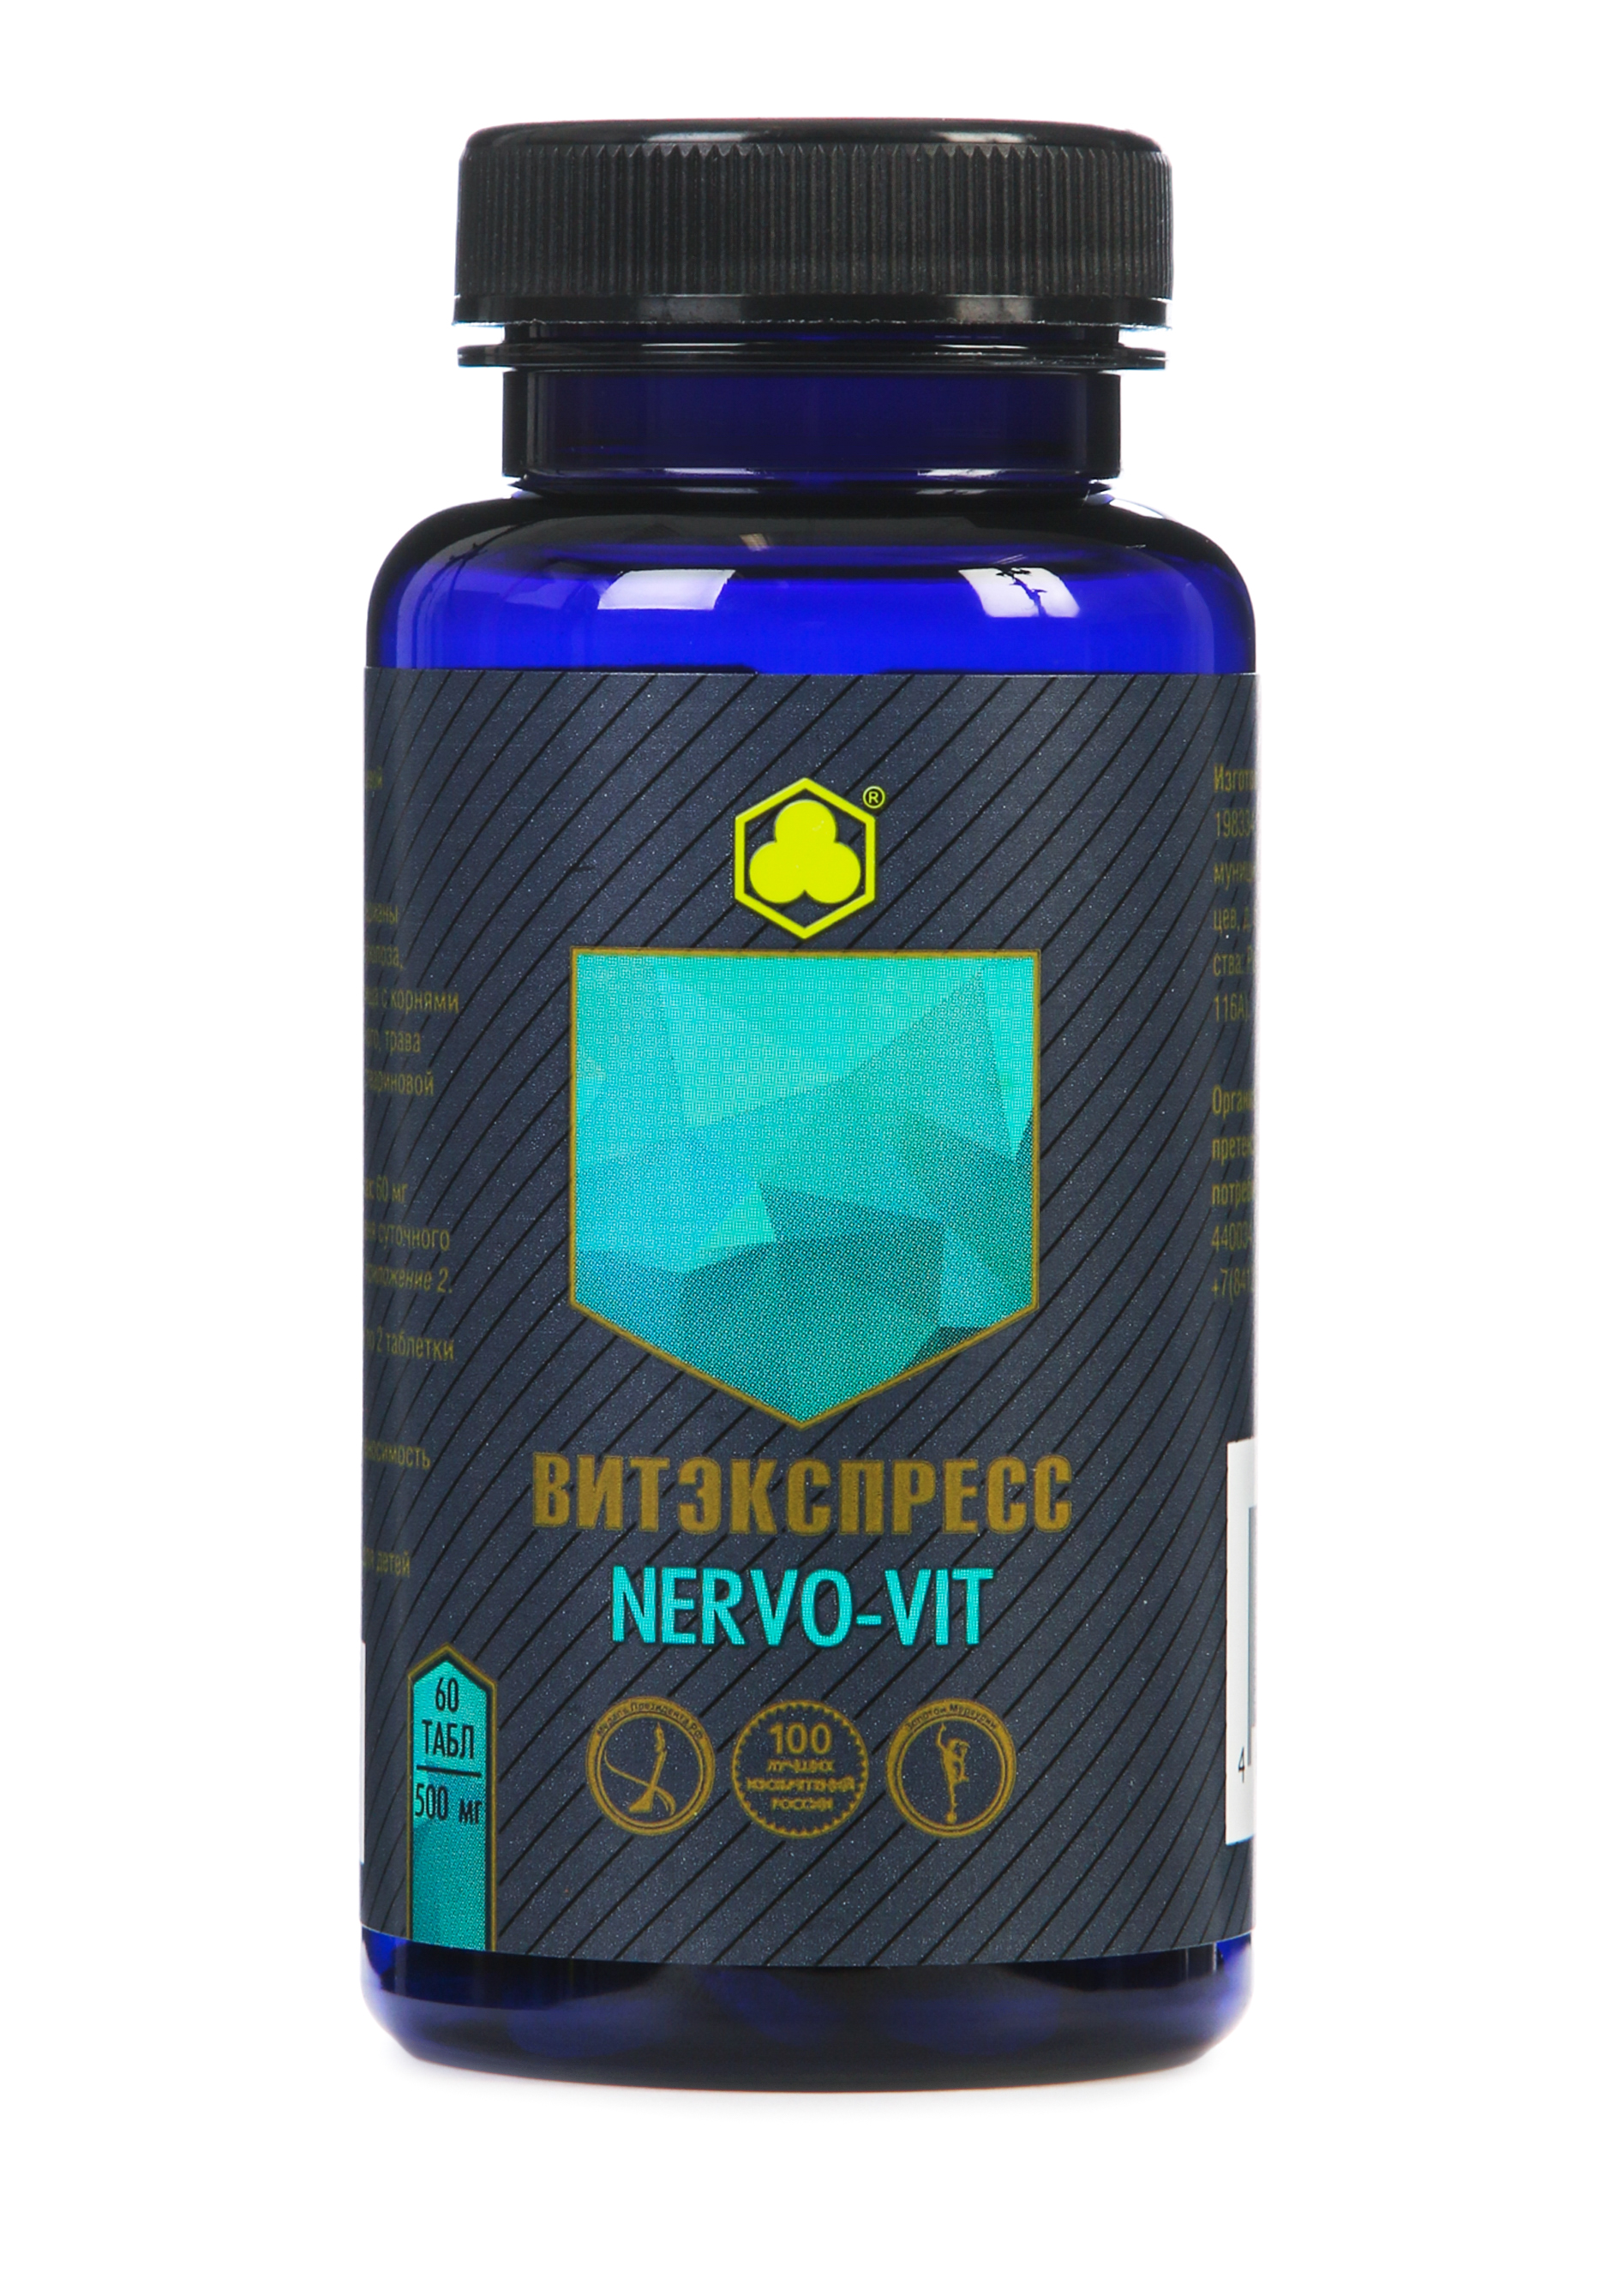 Органик-комплекс Nervo-vit aquayer удо ермолаева таблетки 90шт